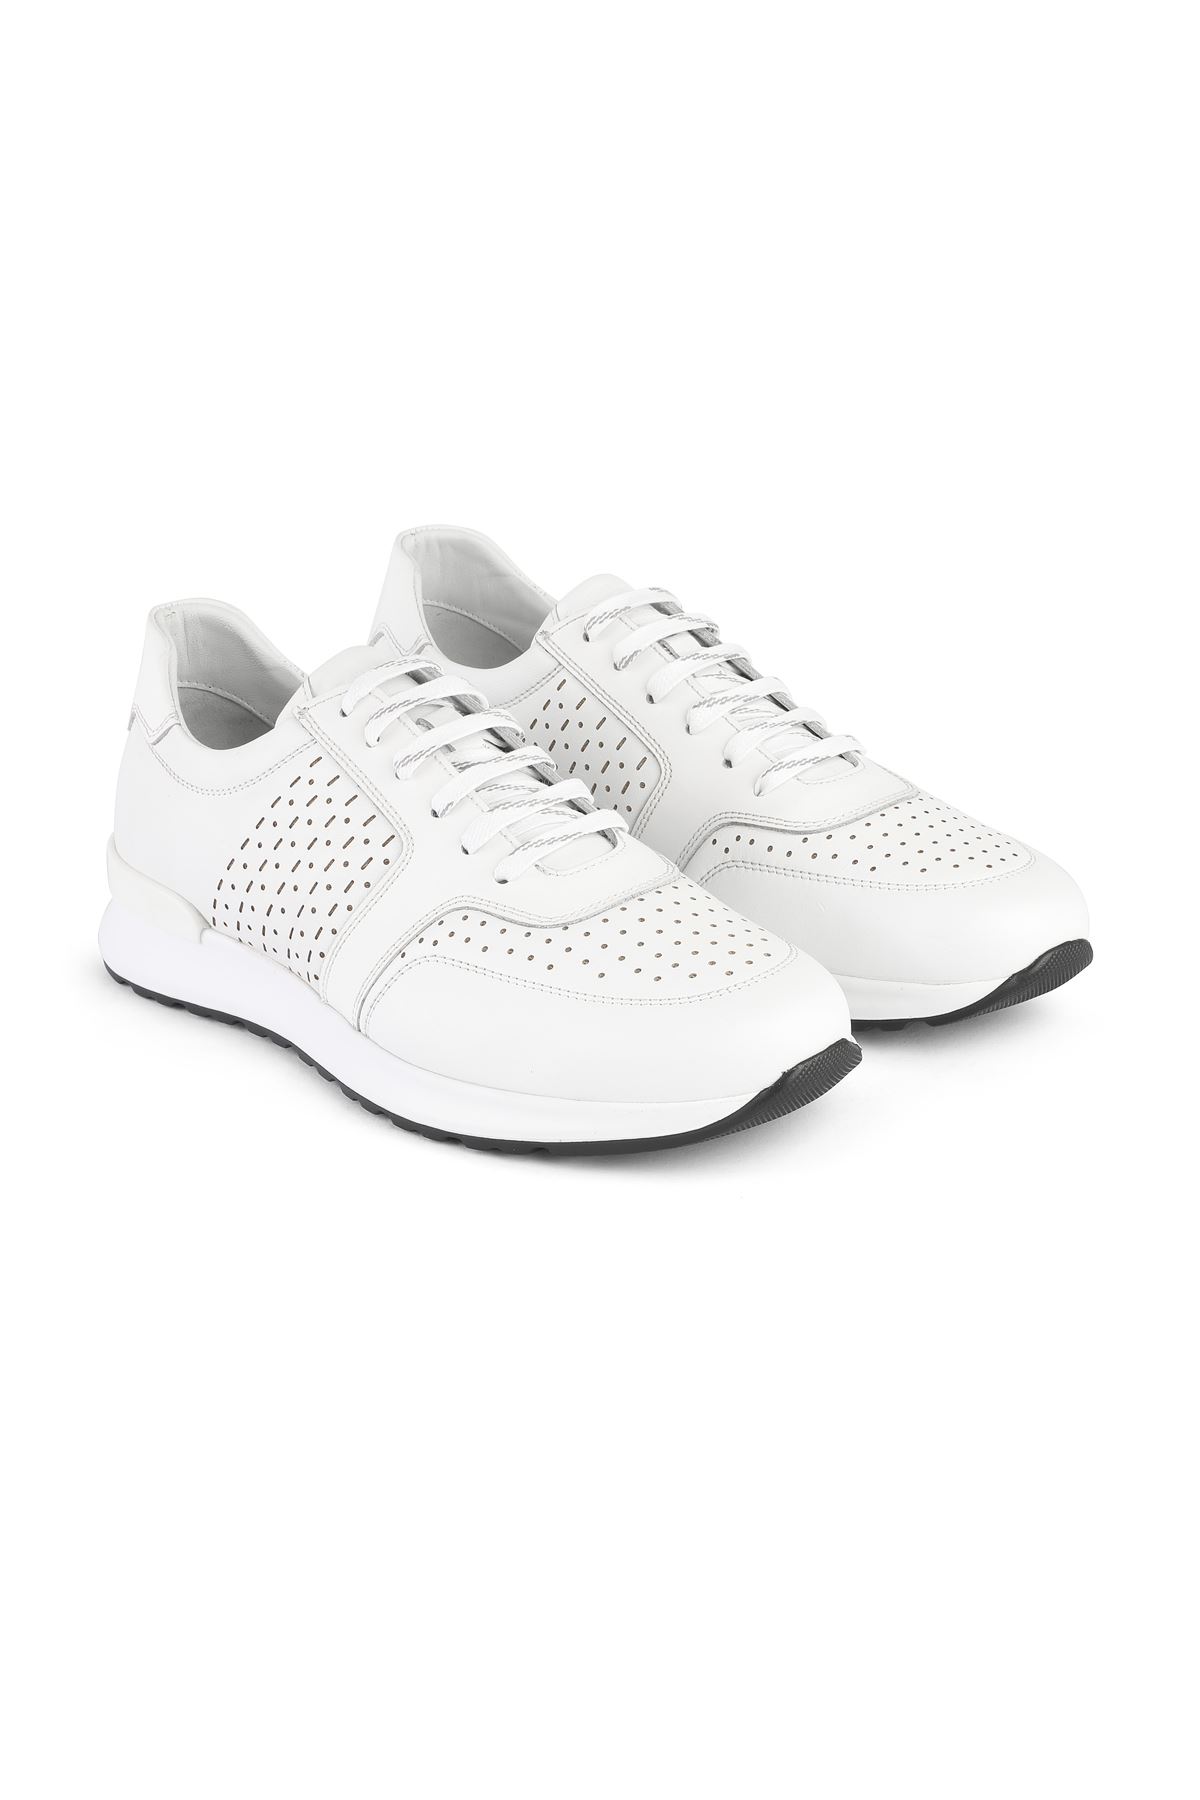 Libero 3416 White Sports Shoes